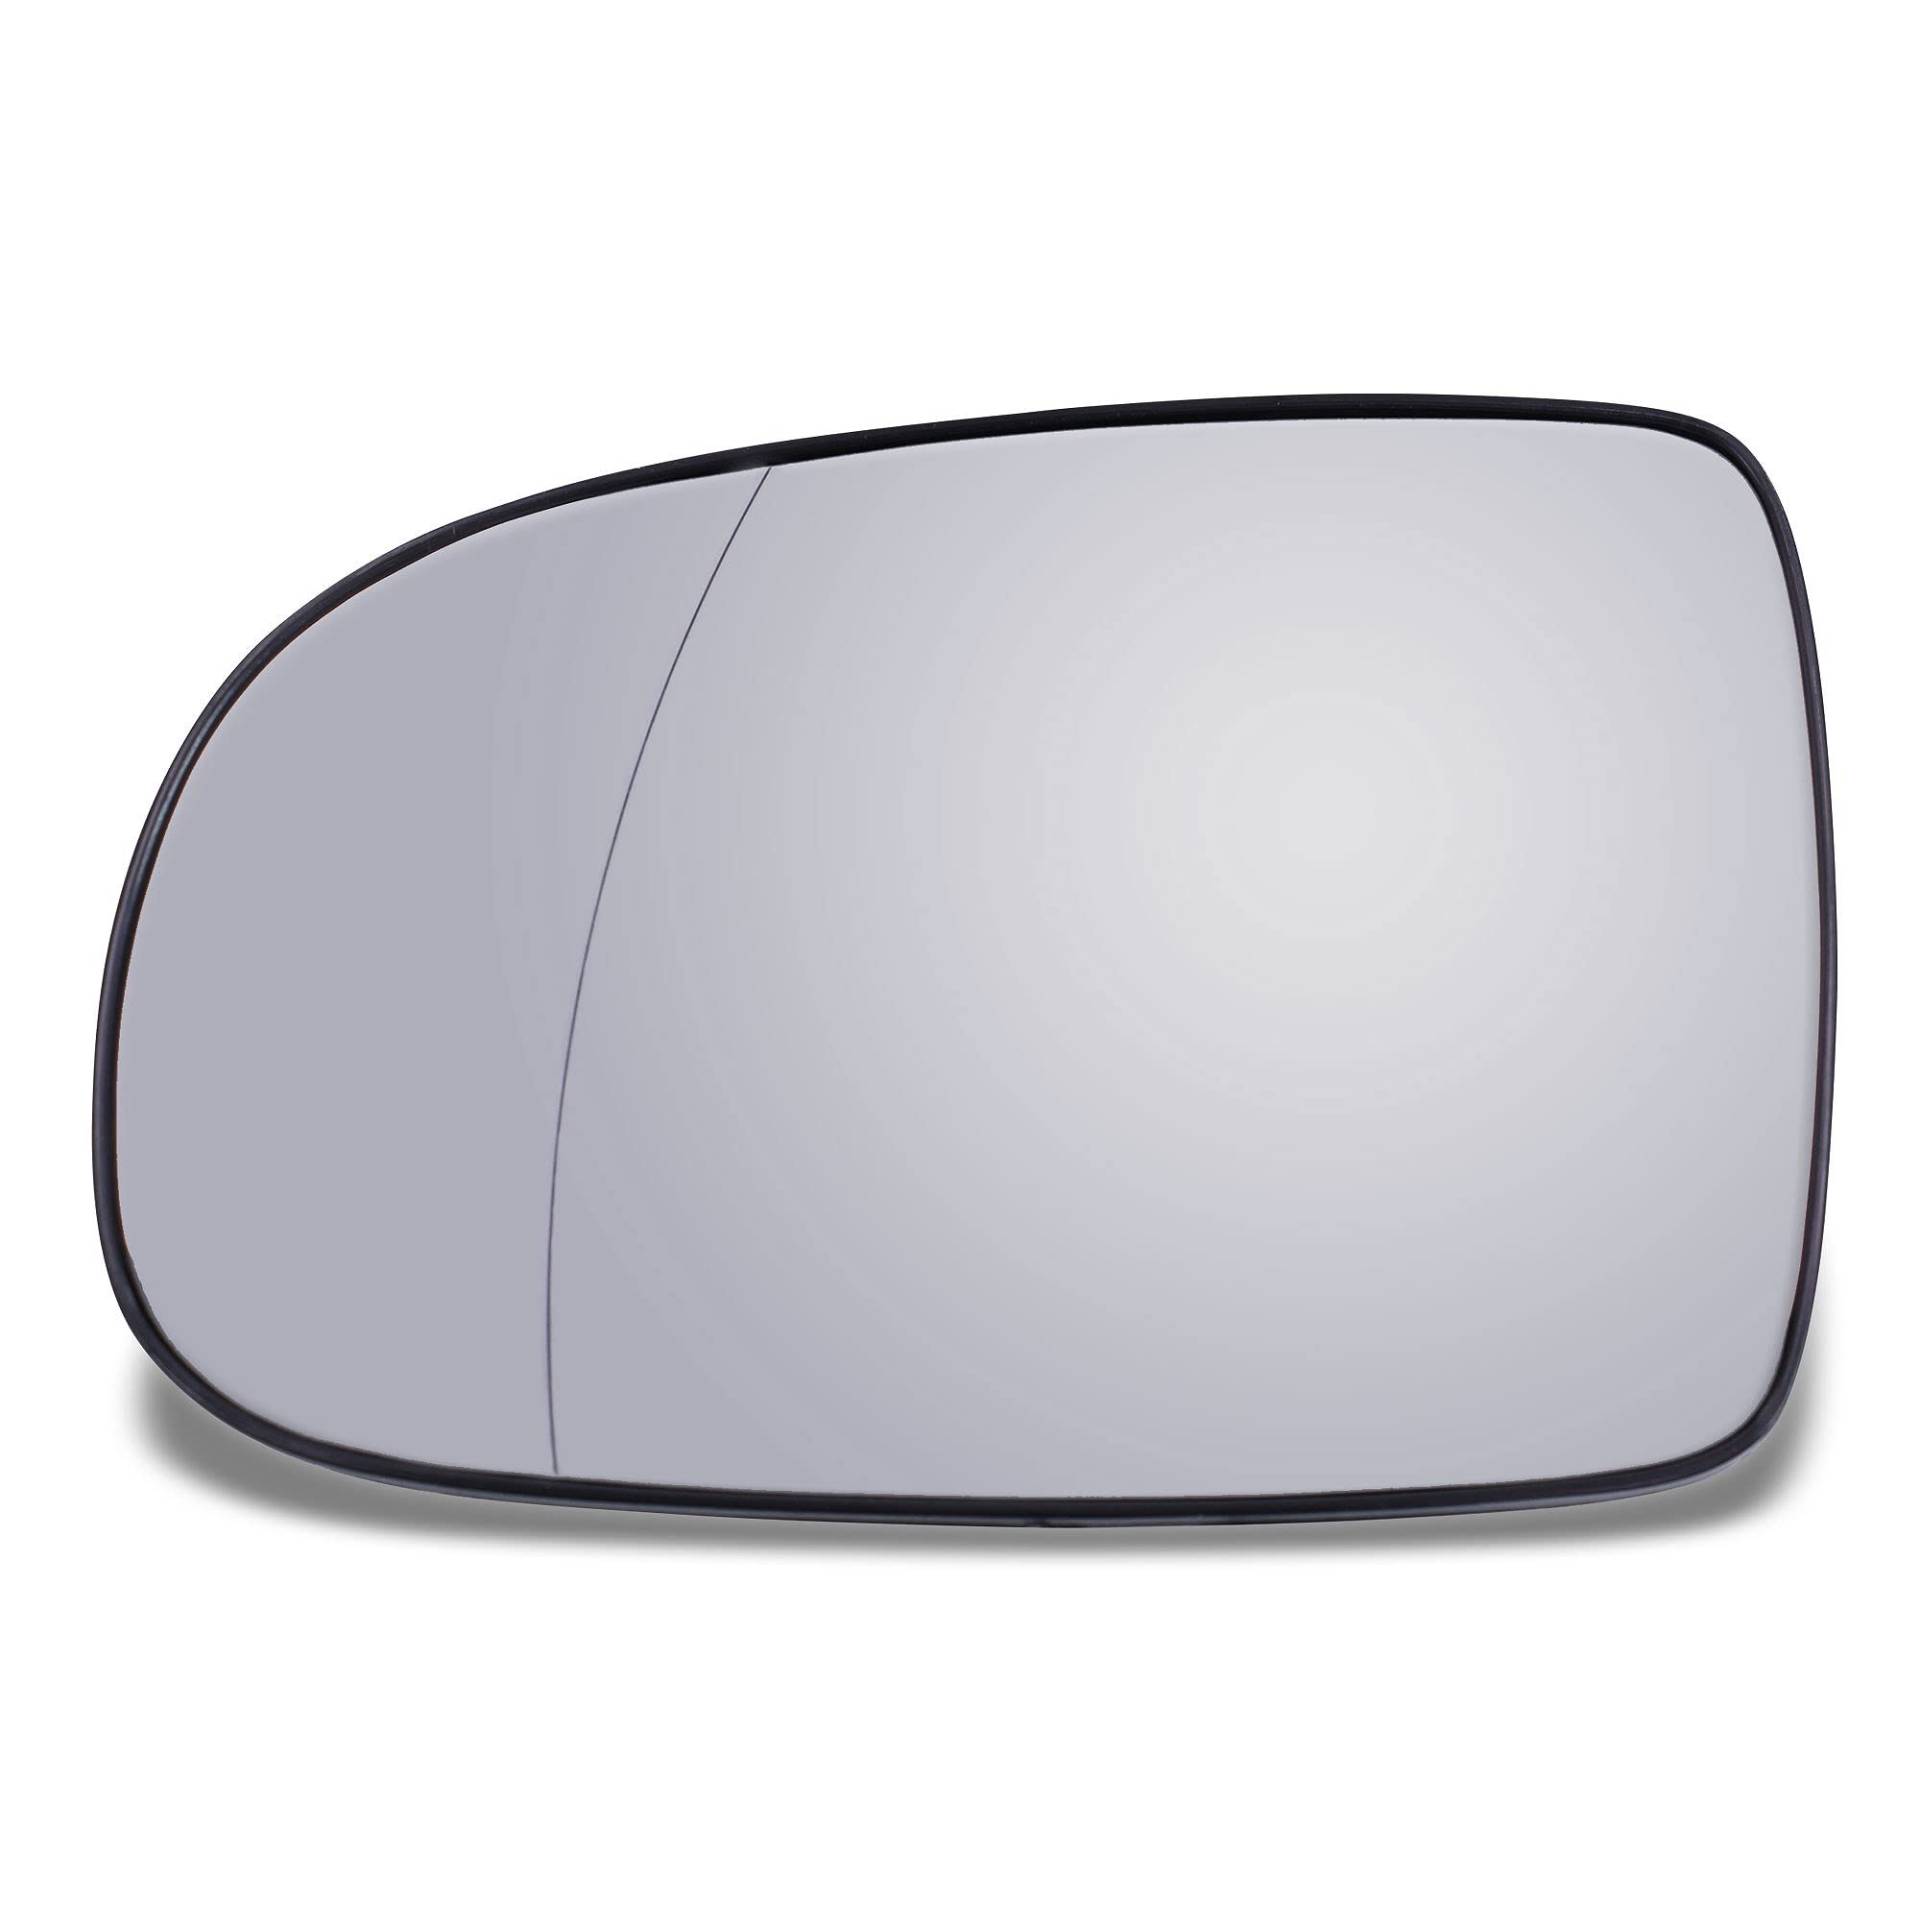 ATEC Germany 1x Spiegelglas links beheizt Außenspiegel Seitenspiegelglas asphärisch Kompatibel mit OPEL CORSA C (X01), TIGRA TwinTop (X04) von ATEC Germany